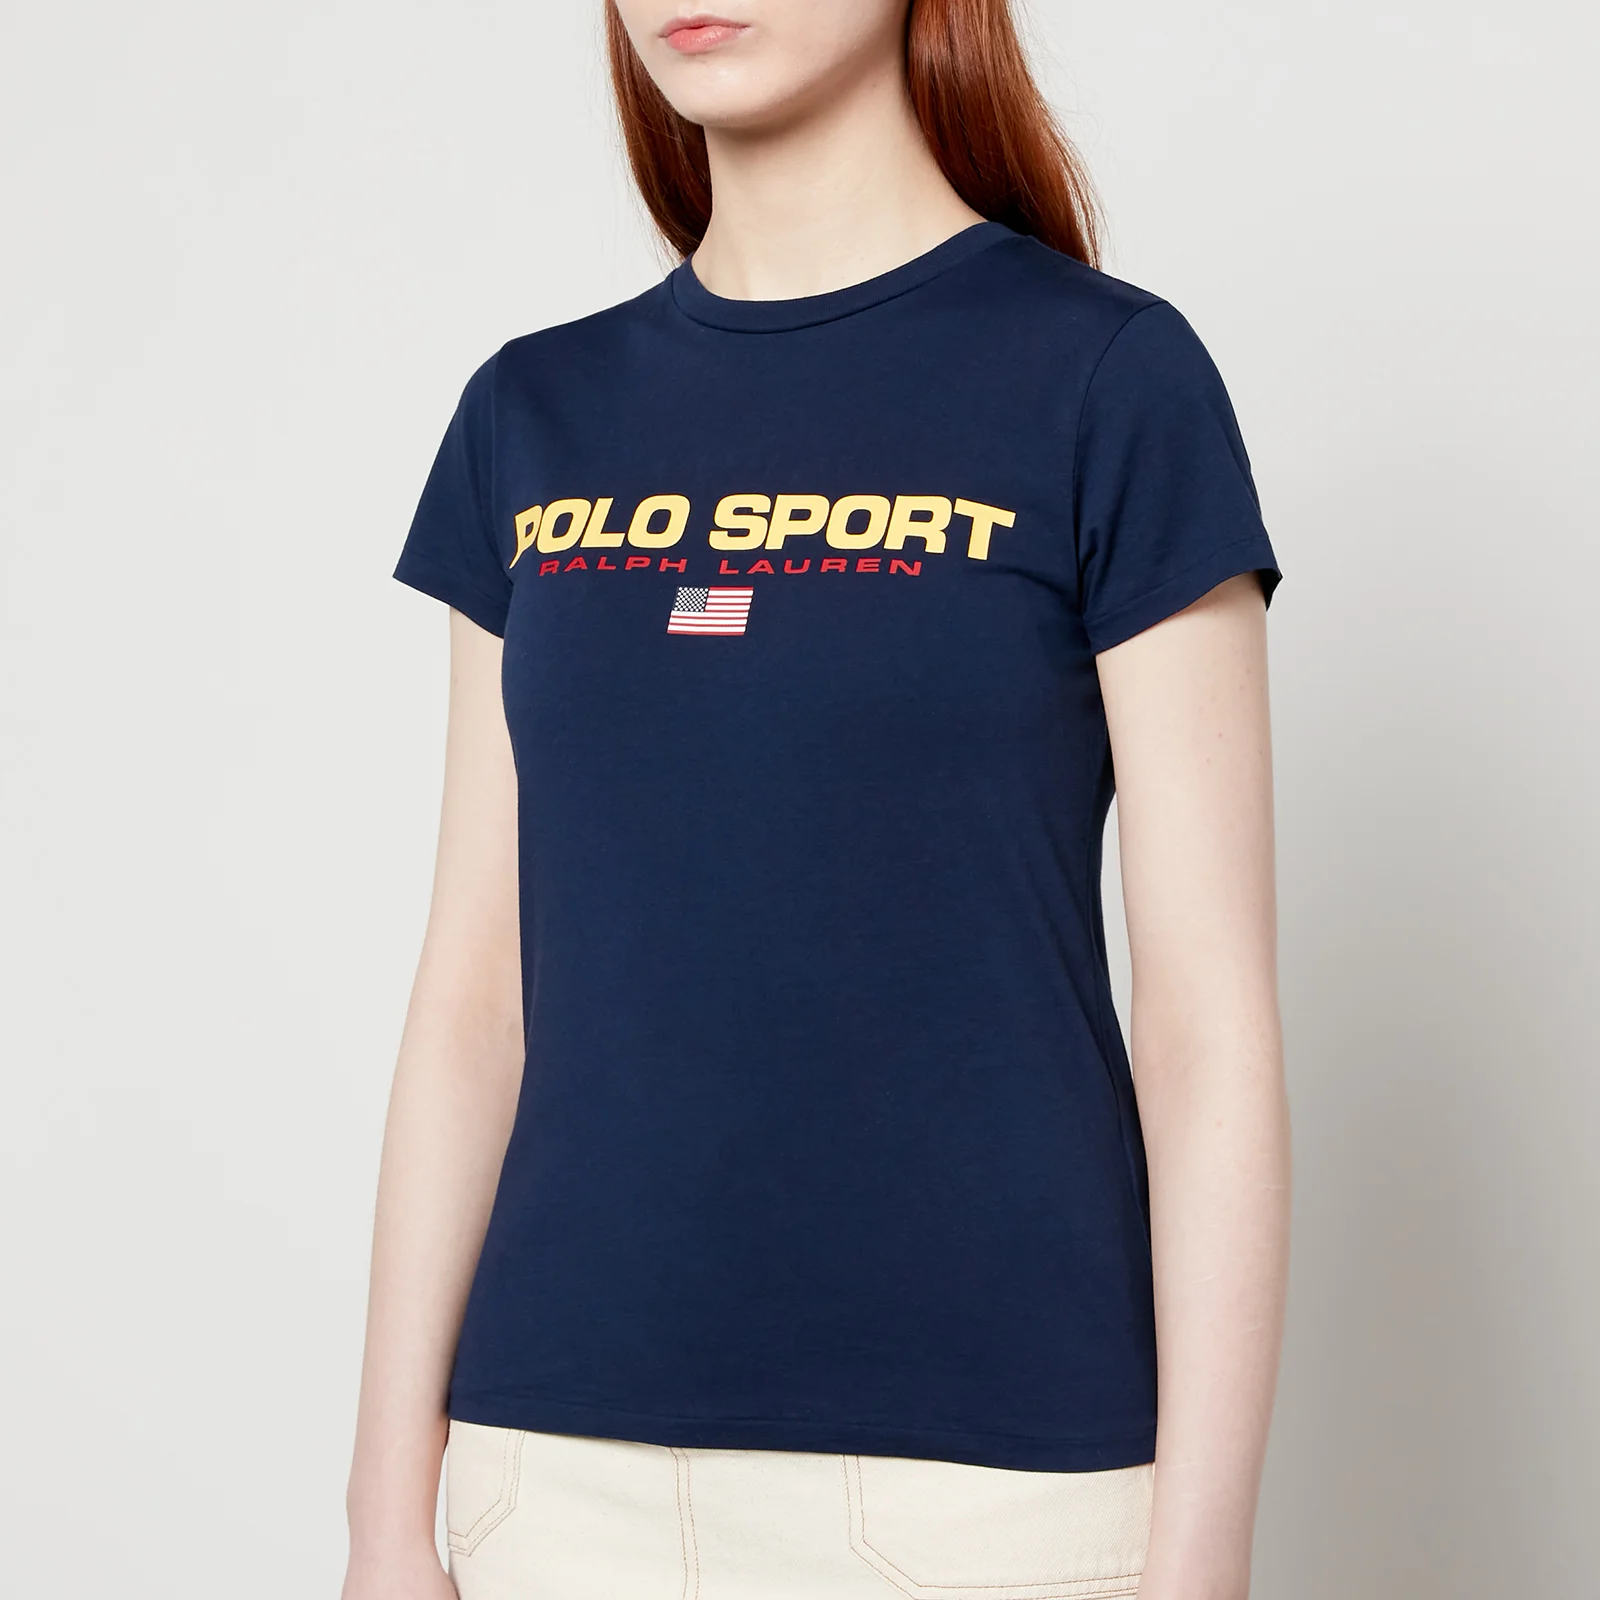 Polo Ralph Lauren Women's Polo Sport T-Shirt - Newport Navy Image 1